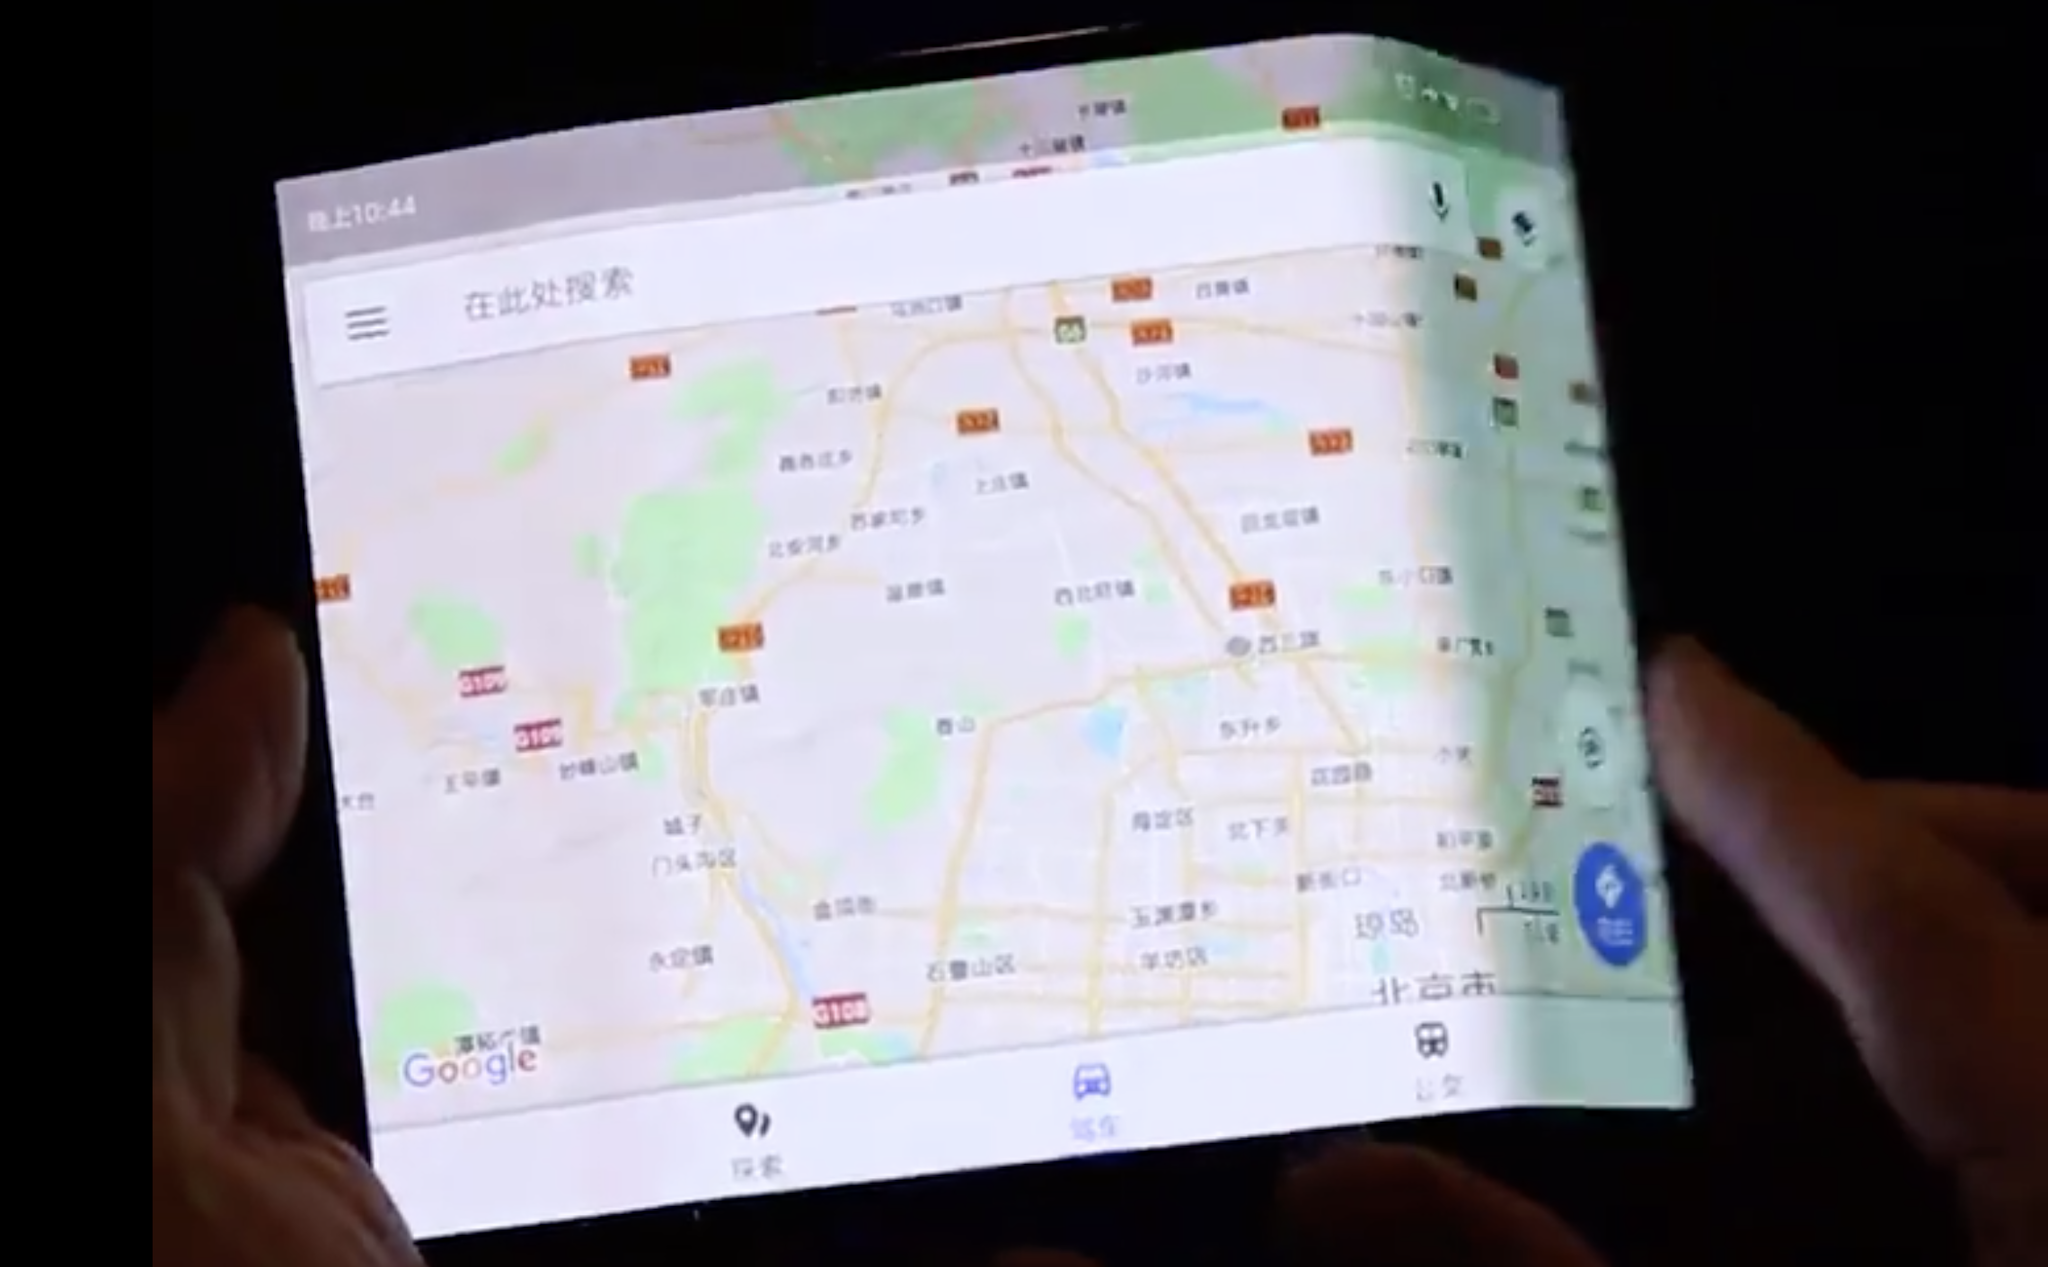 [Video] Đây là điện thoại màn hình bẻ cong của Xiaomi?